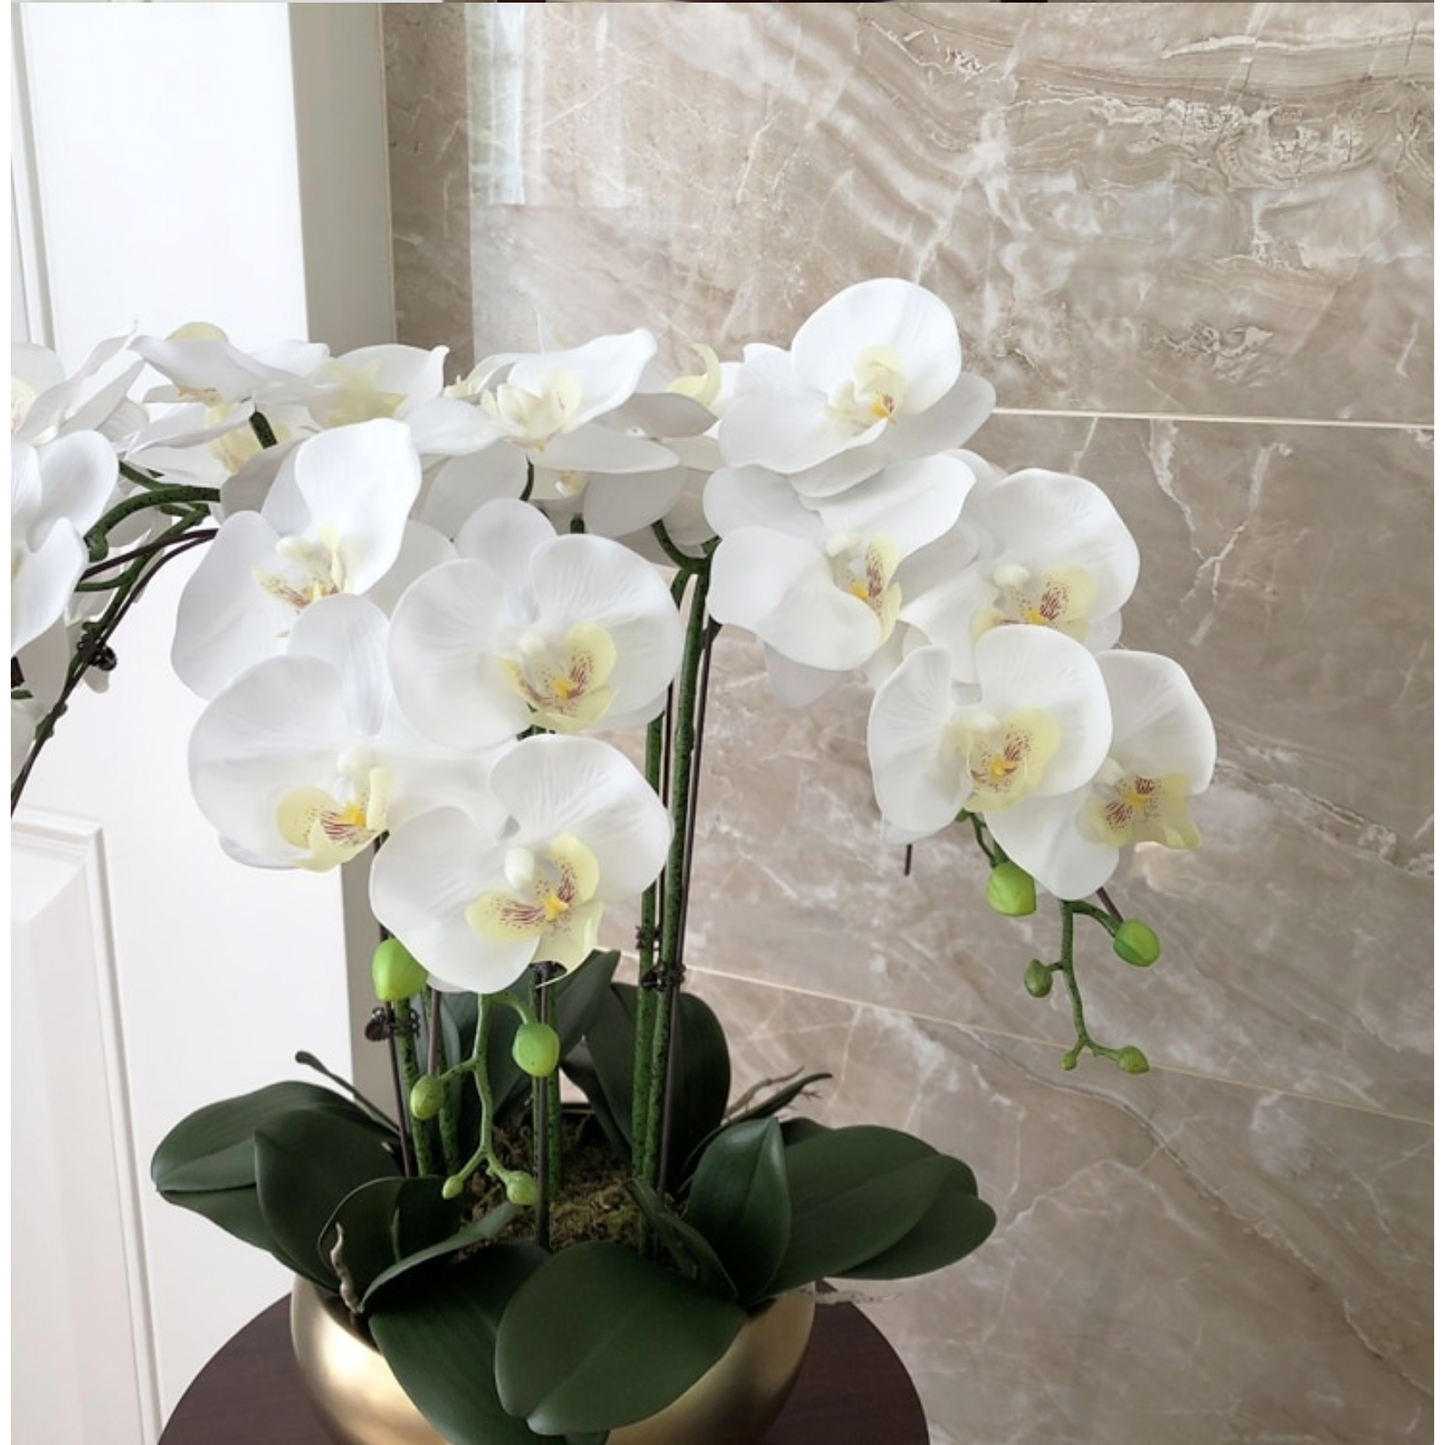 Realistinen keinotekoinen orkidea